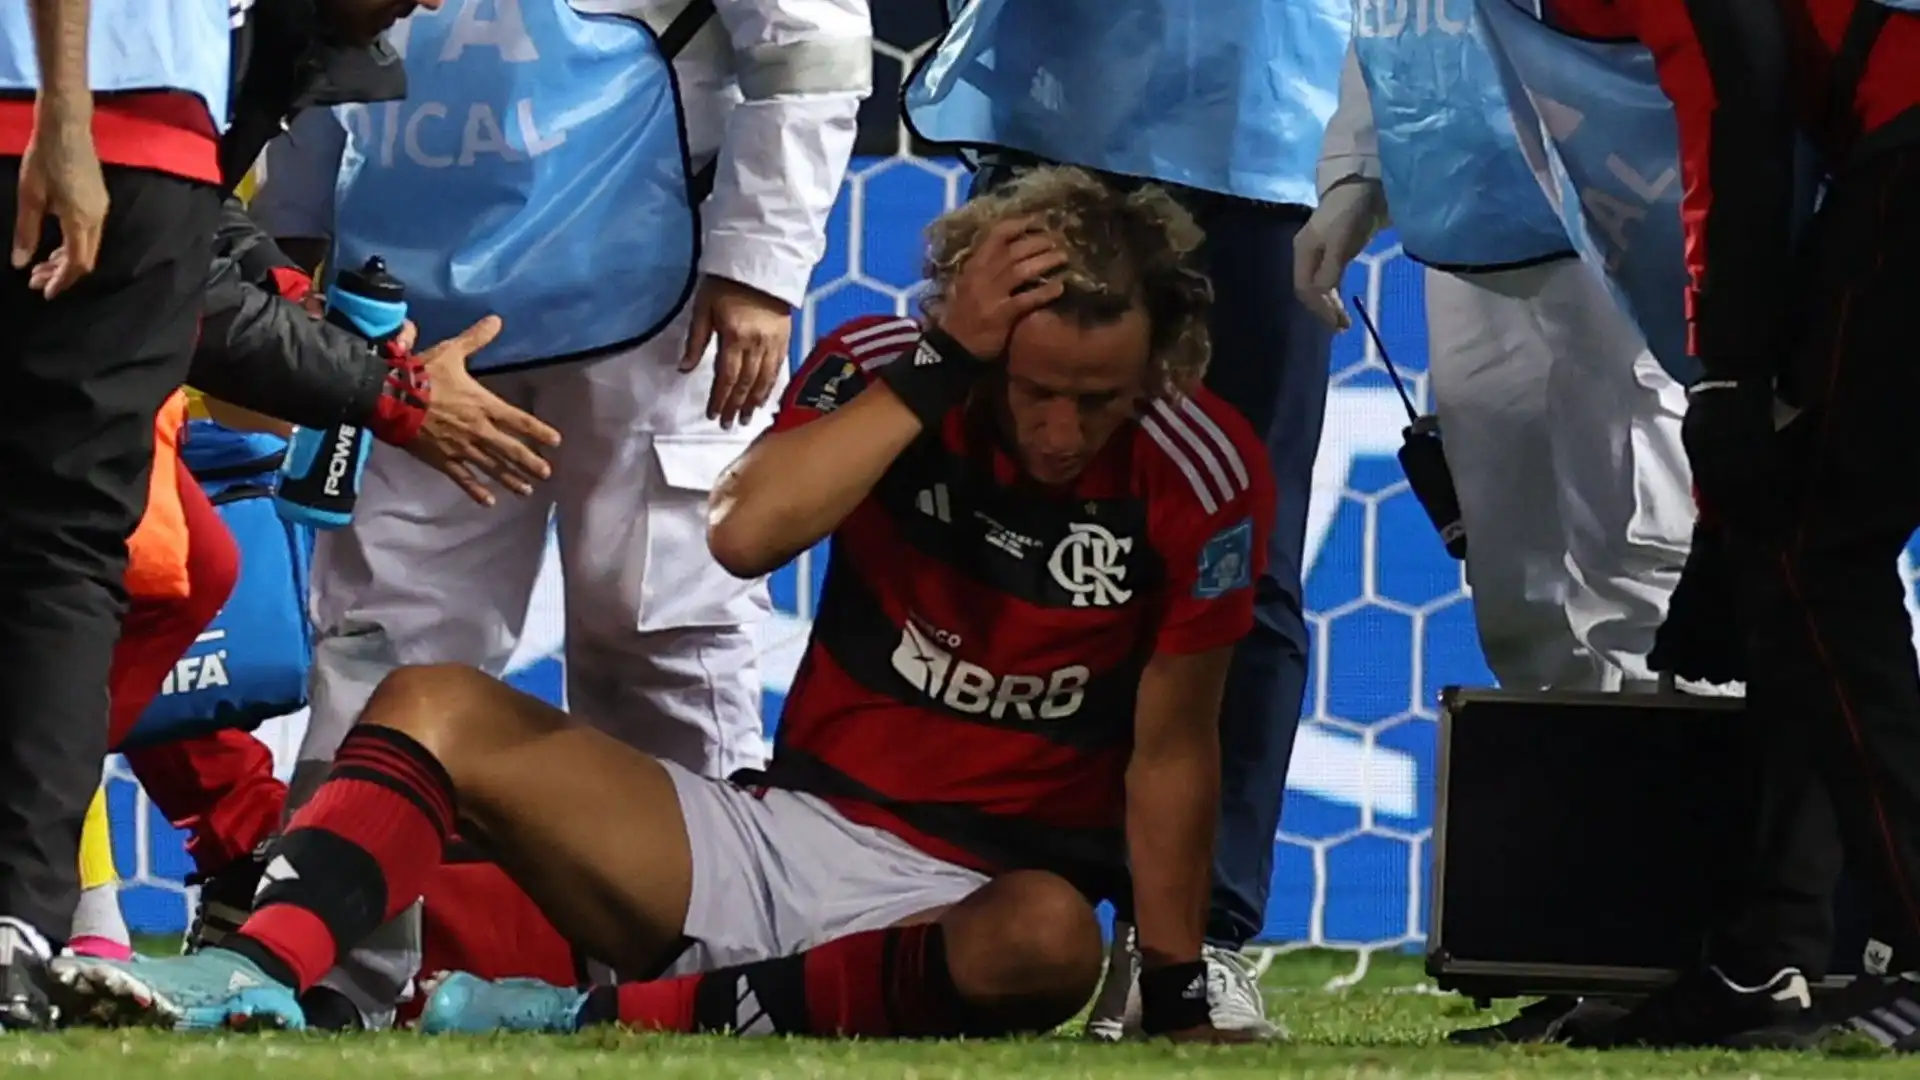 David Luiz avvertiva un forte dolore alla testa: si è scontrato con un avversario